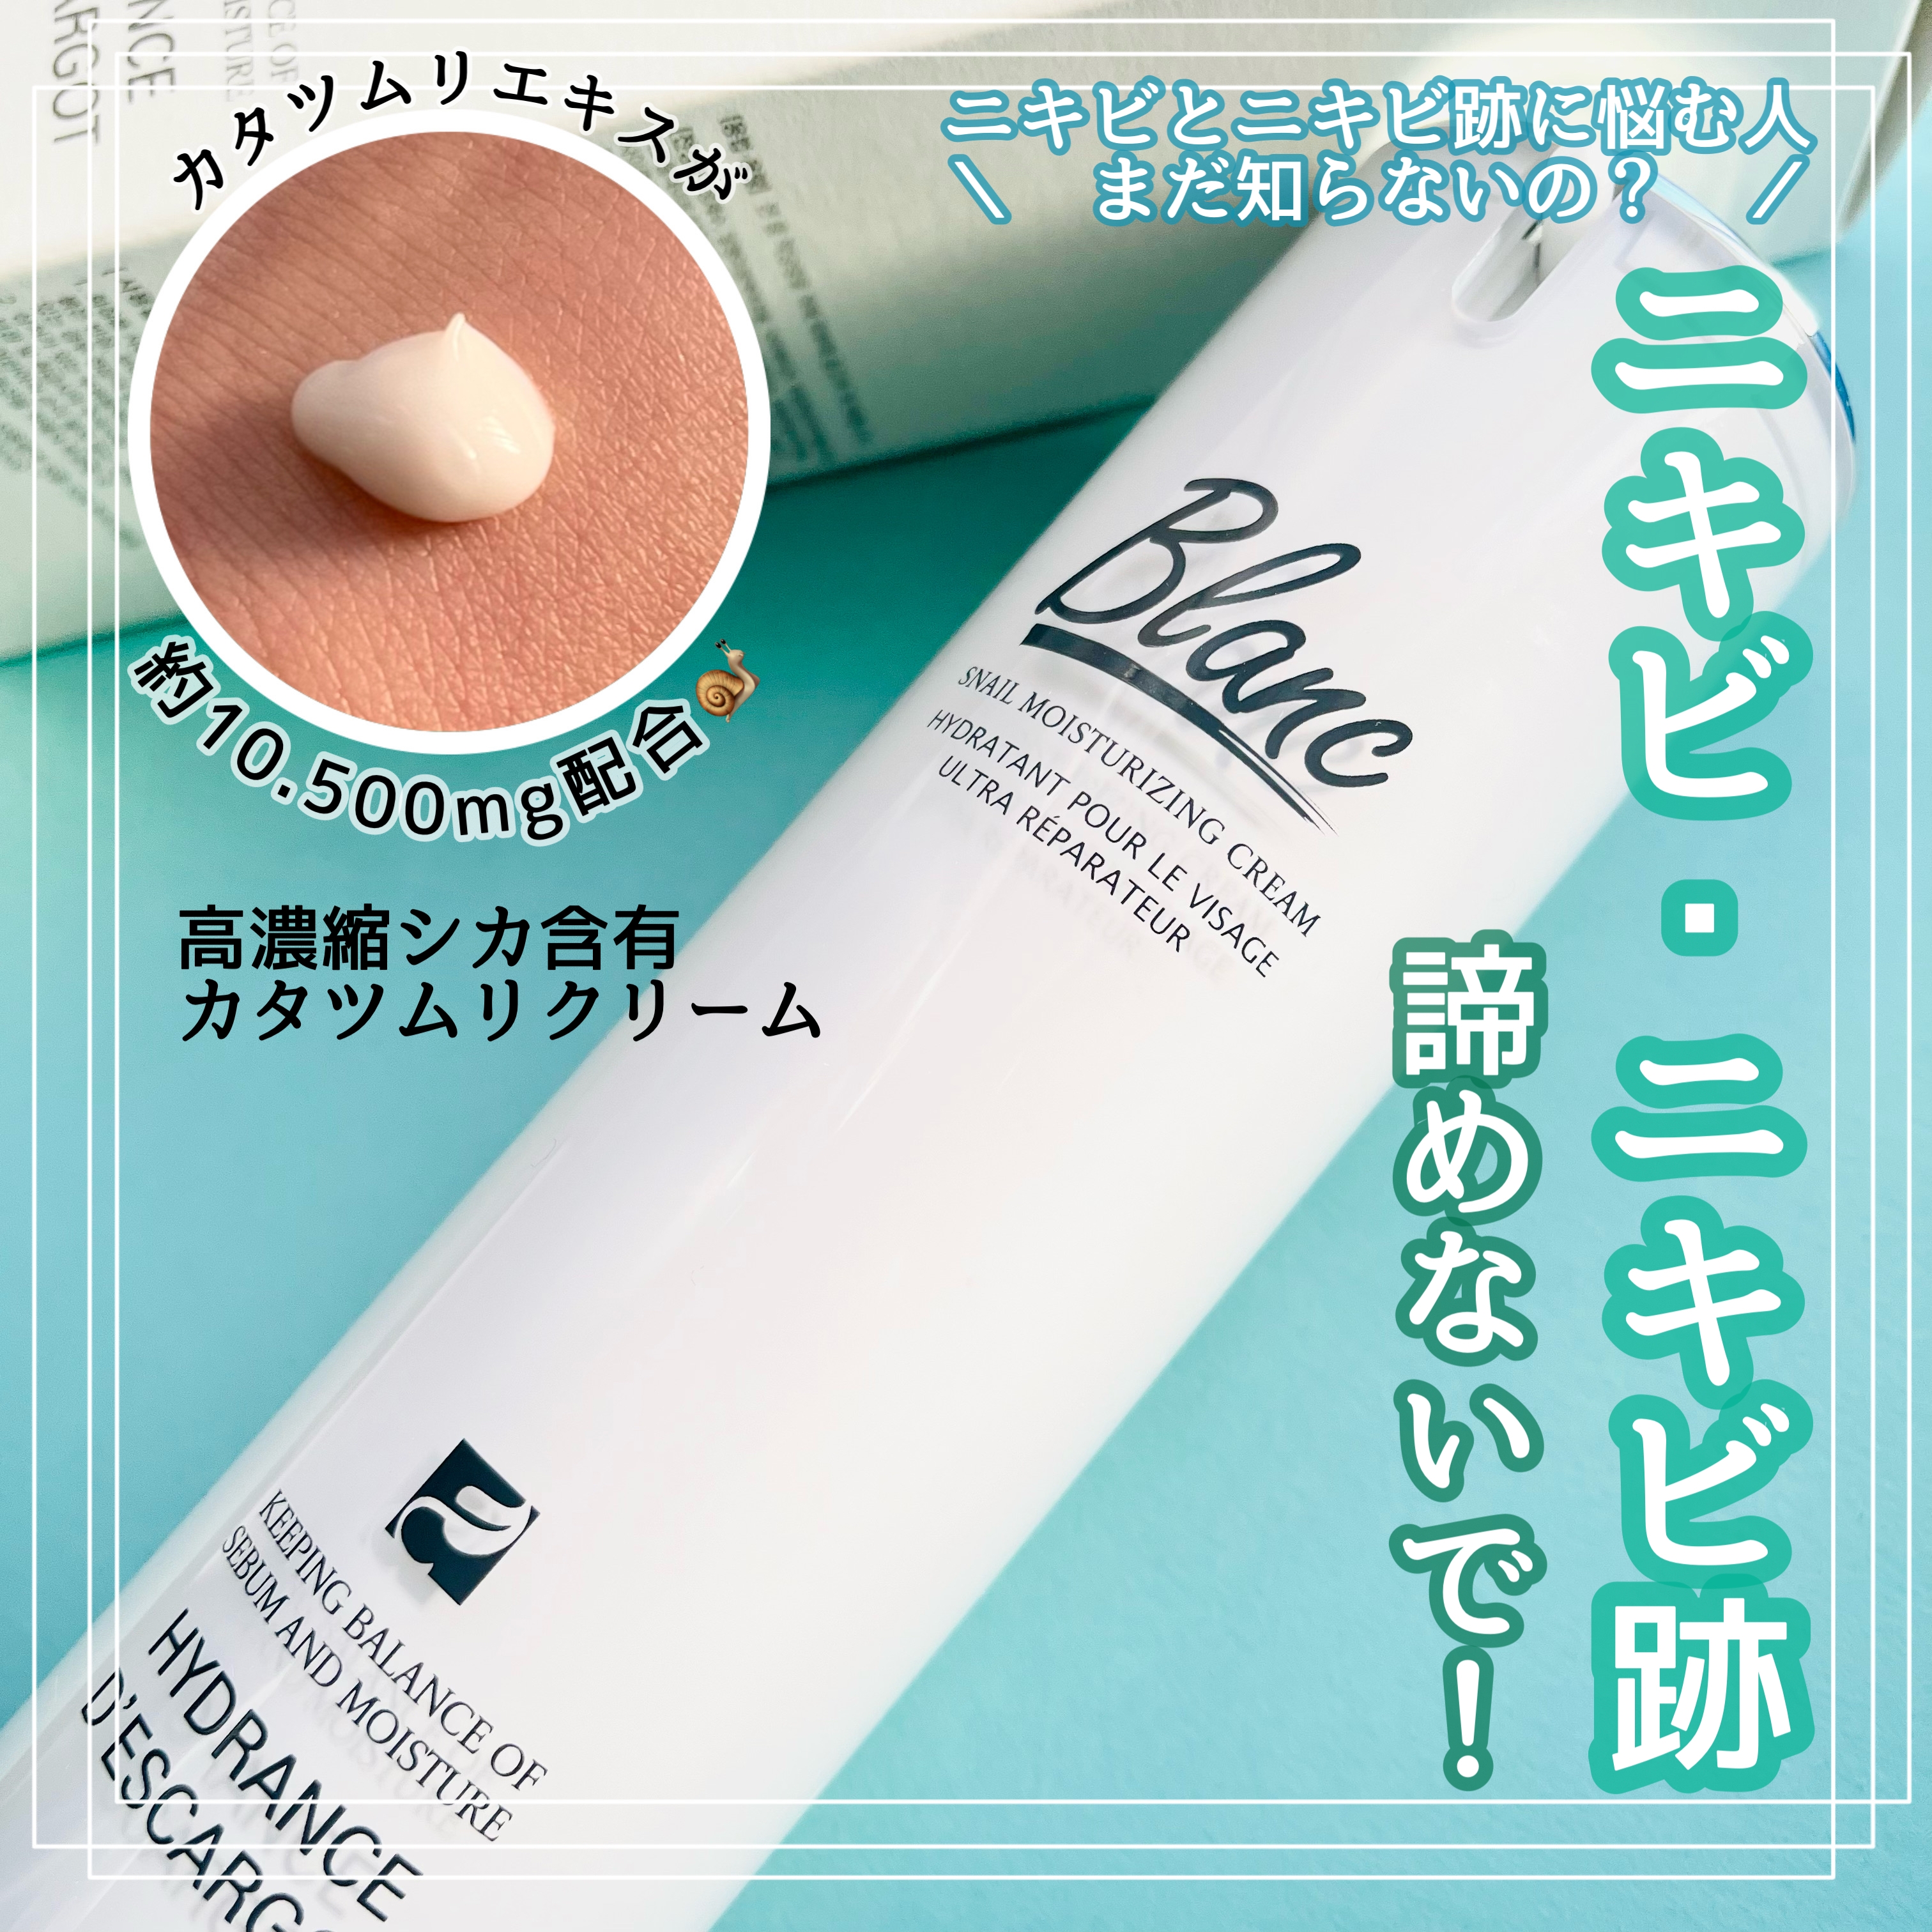 BLANC(ブラン) 高濃縮シカ含有カタツムリクリームの良い点・メリットに関するsachikoさんの口コミ画像1